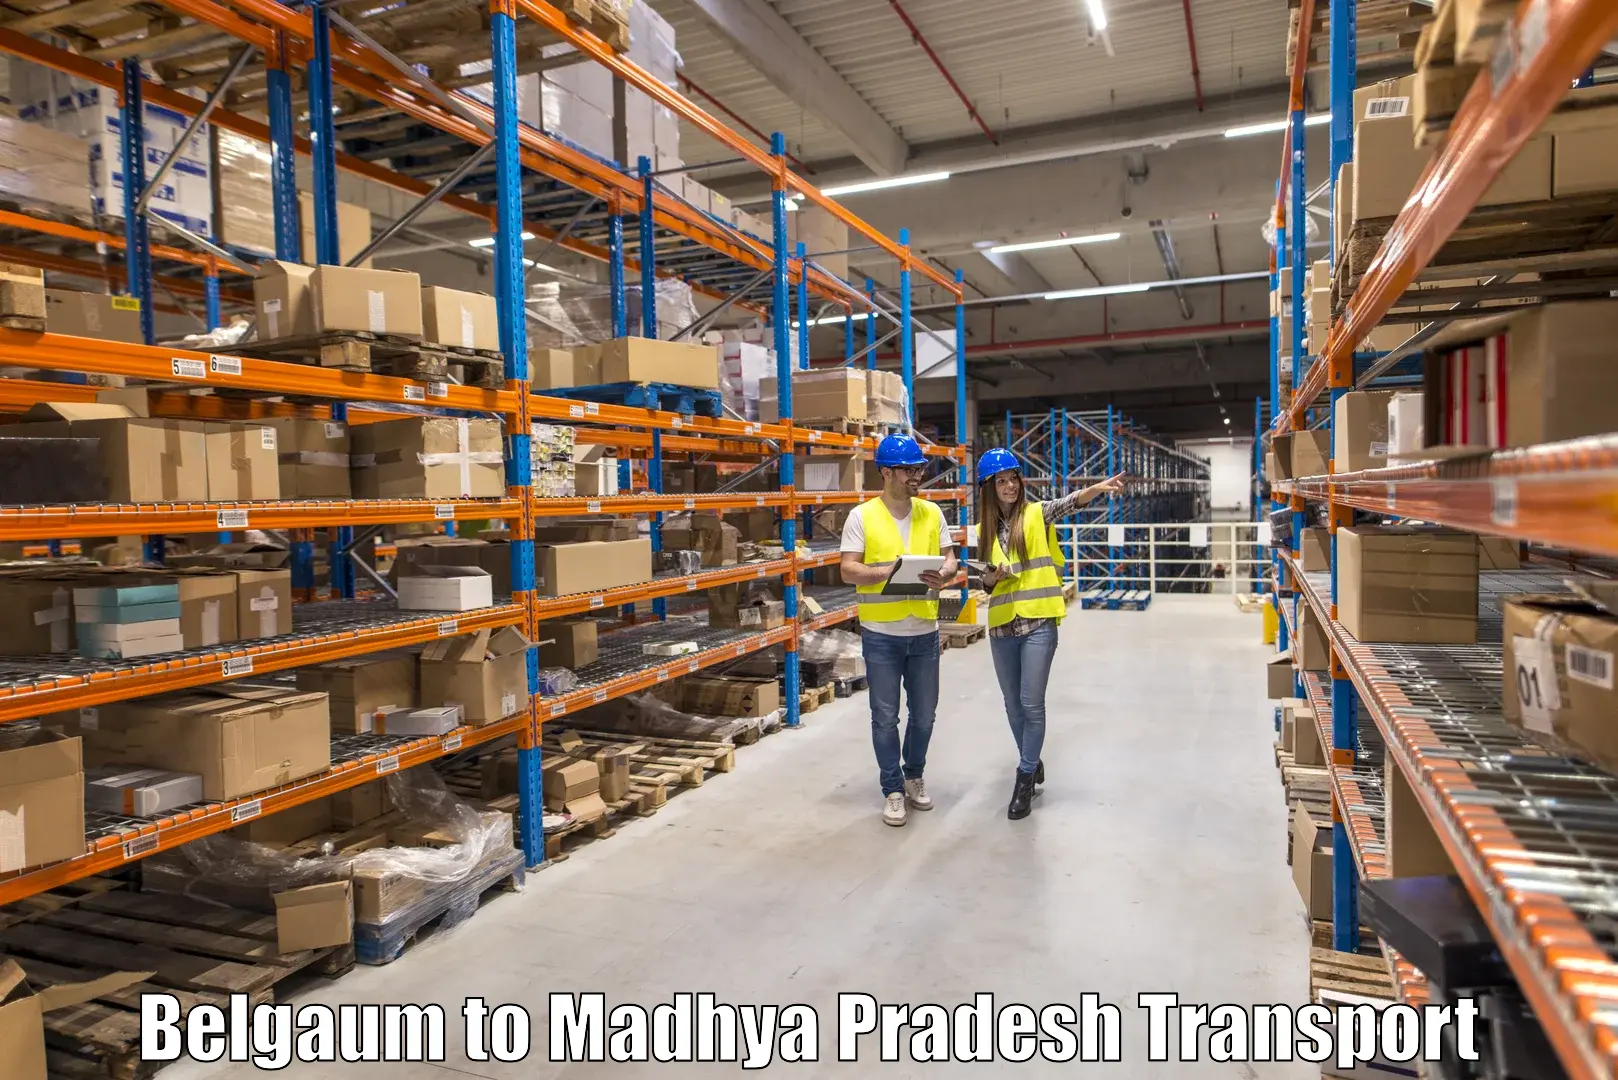 Furniture transport service Belgaum to Madhya Pradesh